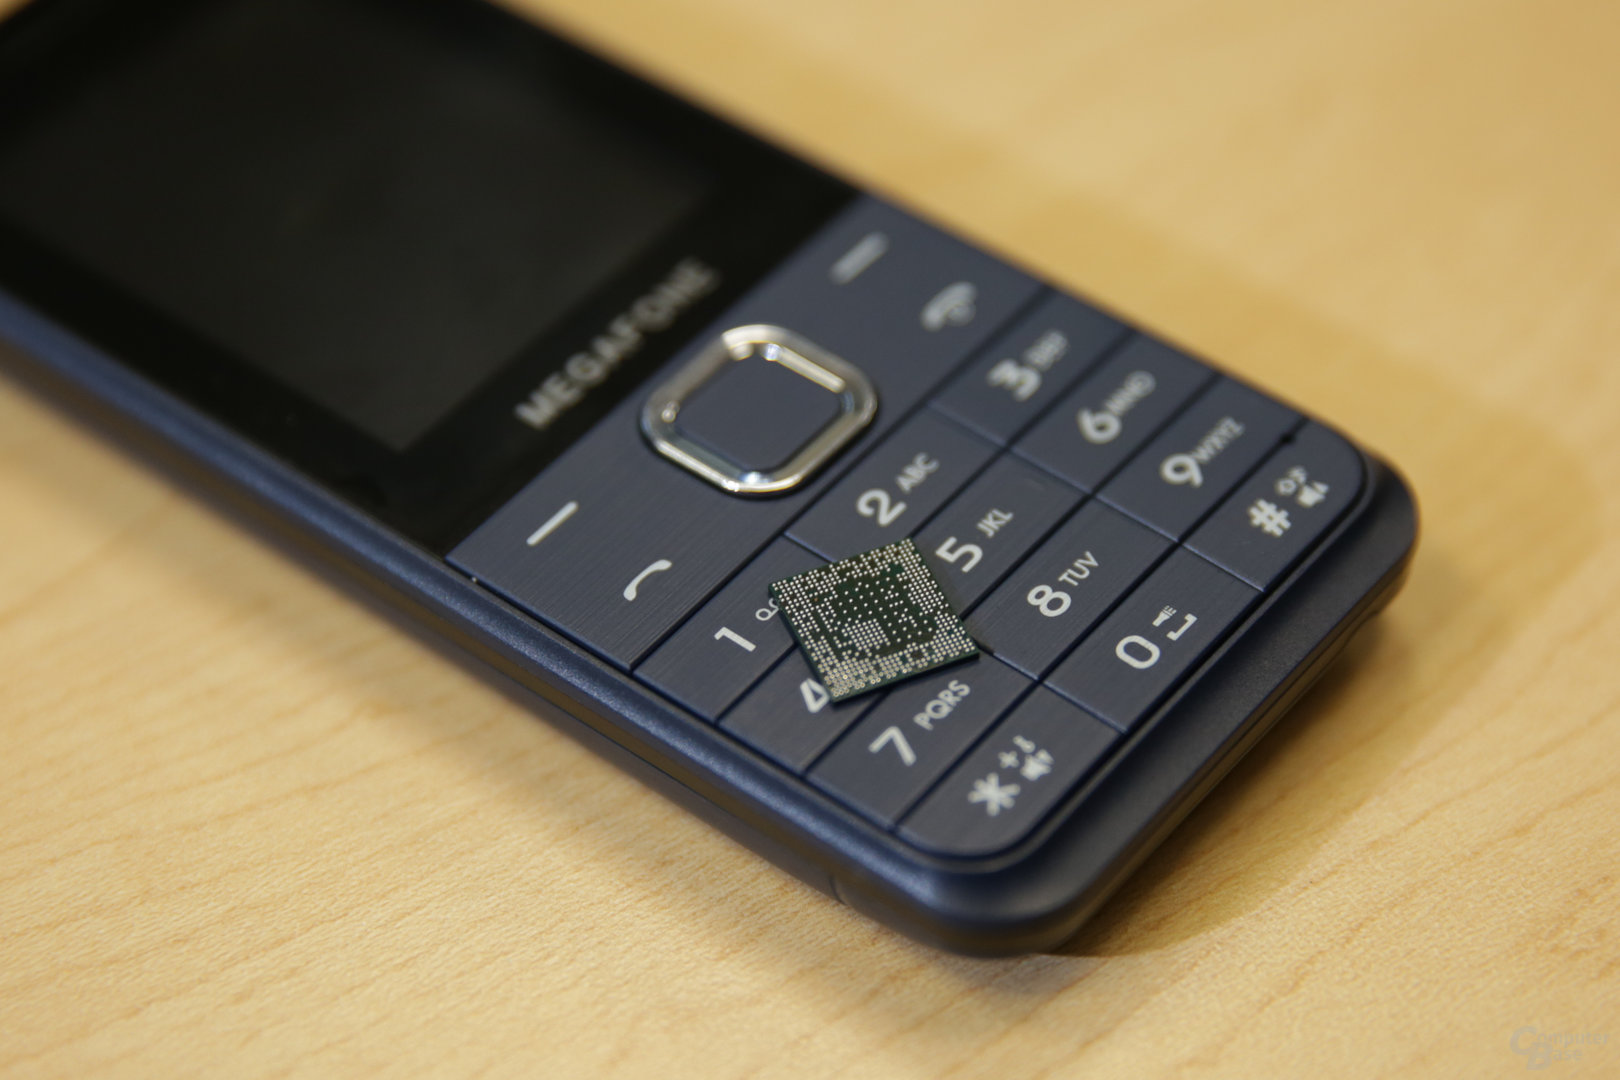 Feature Phone mit Qualcomm 205 Mobile Platform